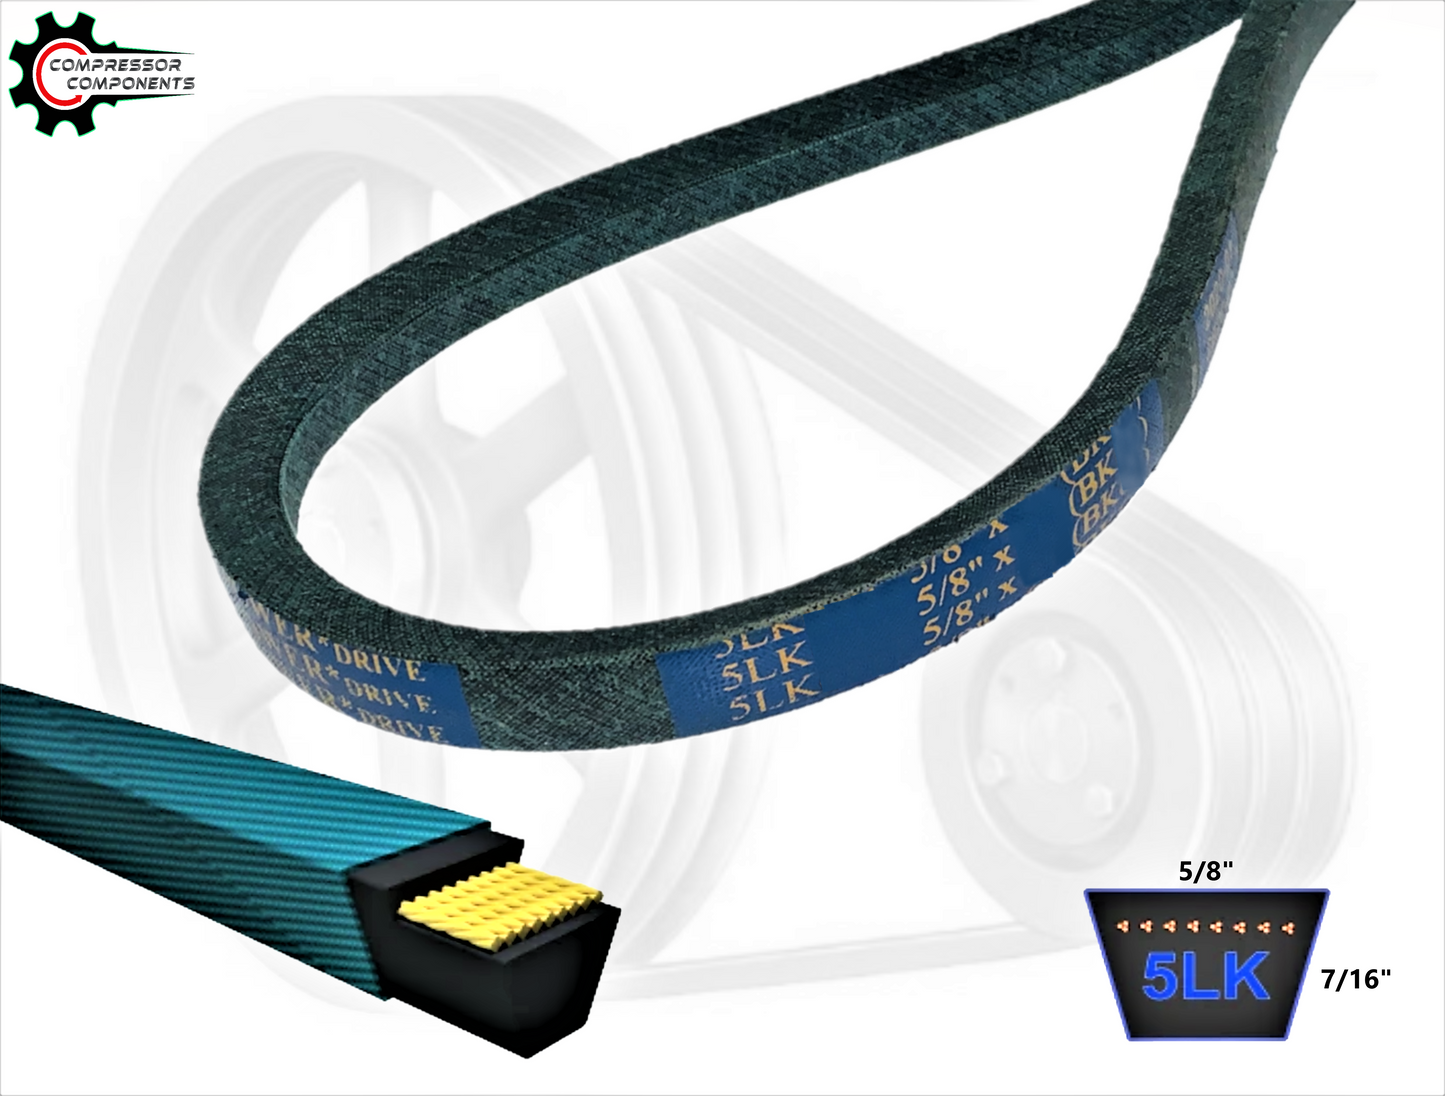 B41K / 5LK440 - D&D Dura-Ultimate Kevlar Reinforced V-Belt